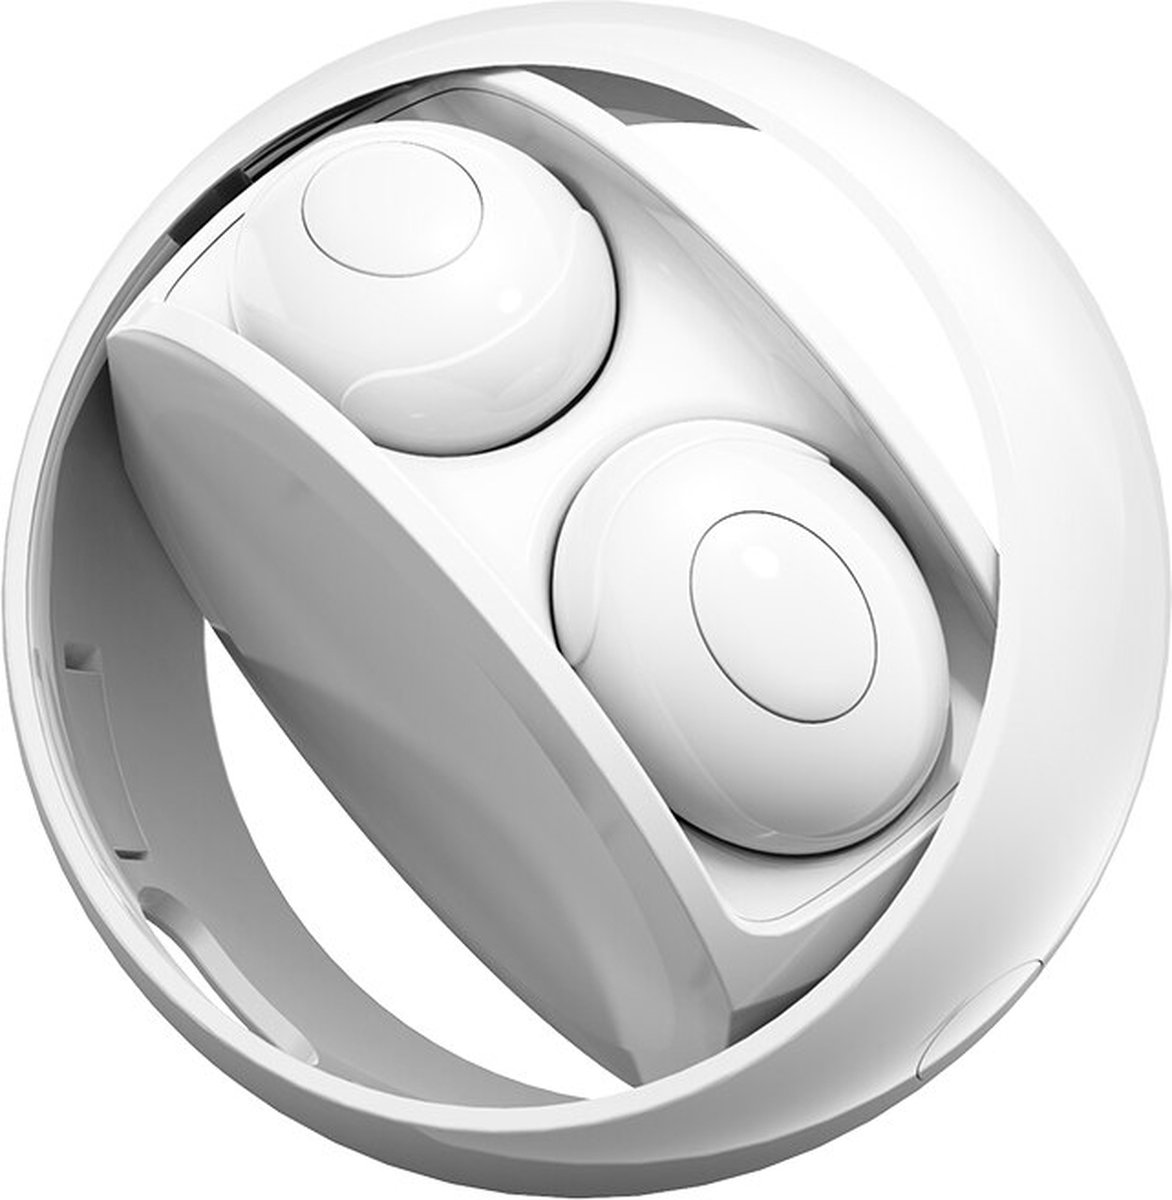 Witte IPX 6 draadloze bluetooth 5.0 oordopjes 80 uur standby voor dagelijkse en gaming gebruik, water-en zweetproof